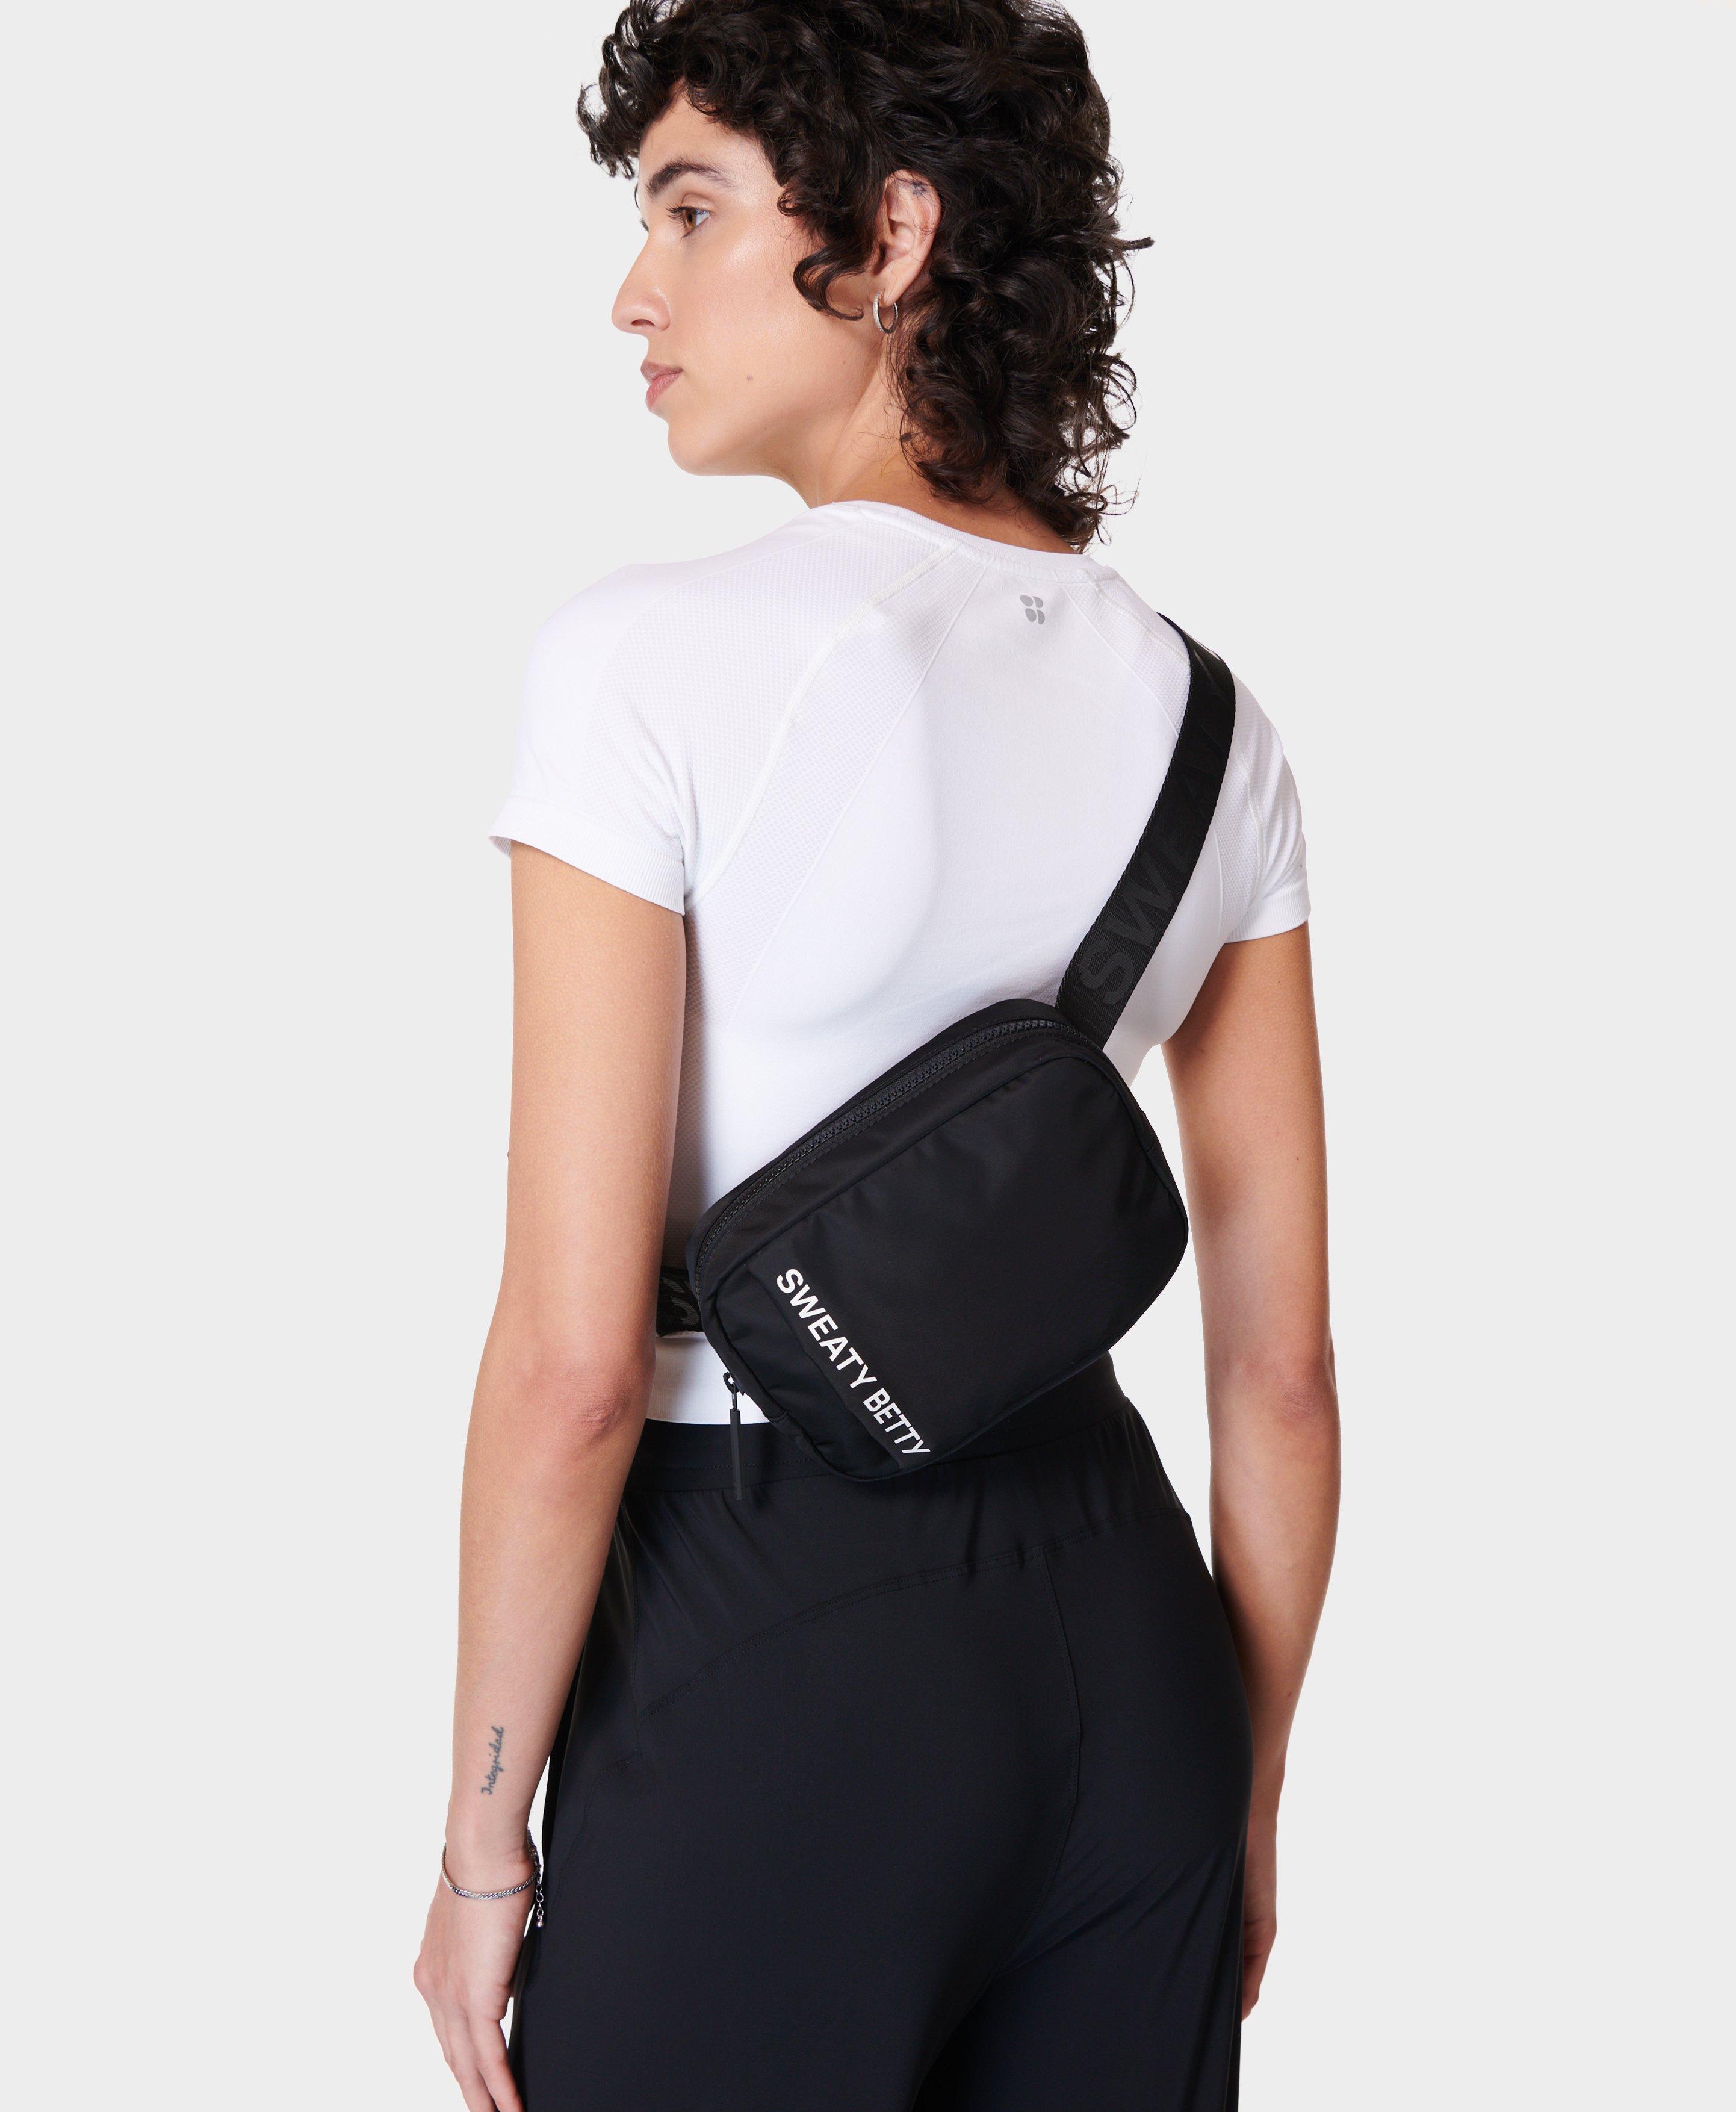 Sweaty Betty Motion Belt Bag, Black, Women's One Size